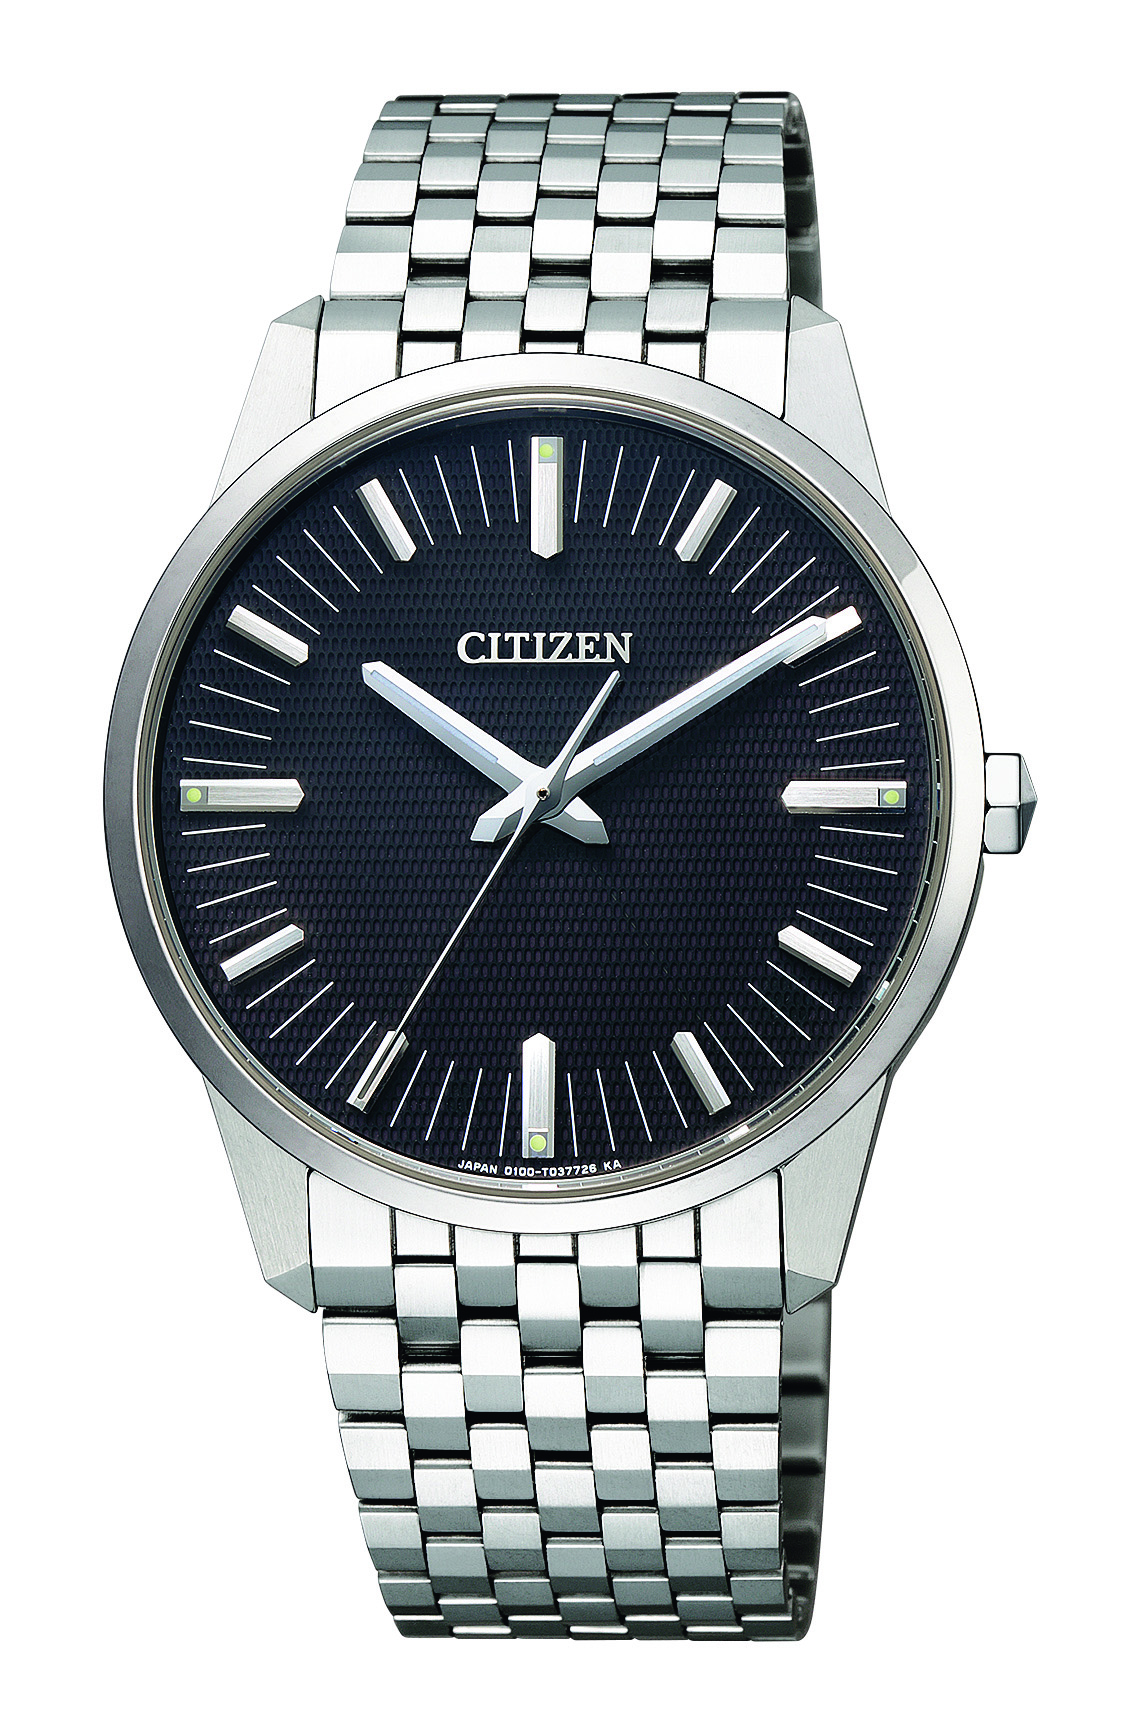 ザ シチズン The Citizen The Citizen Aq6021 51e ブランド腕時計の正規販売店紹介サイトgressive グレッシブ